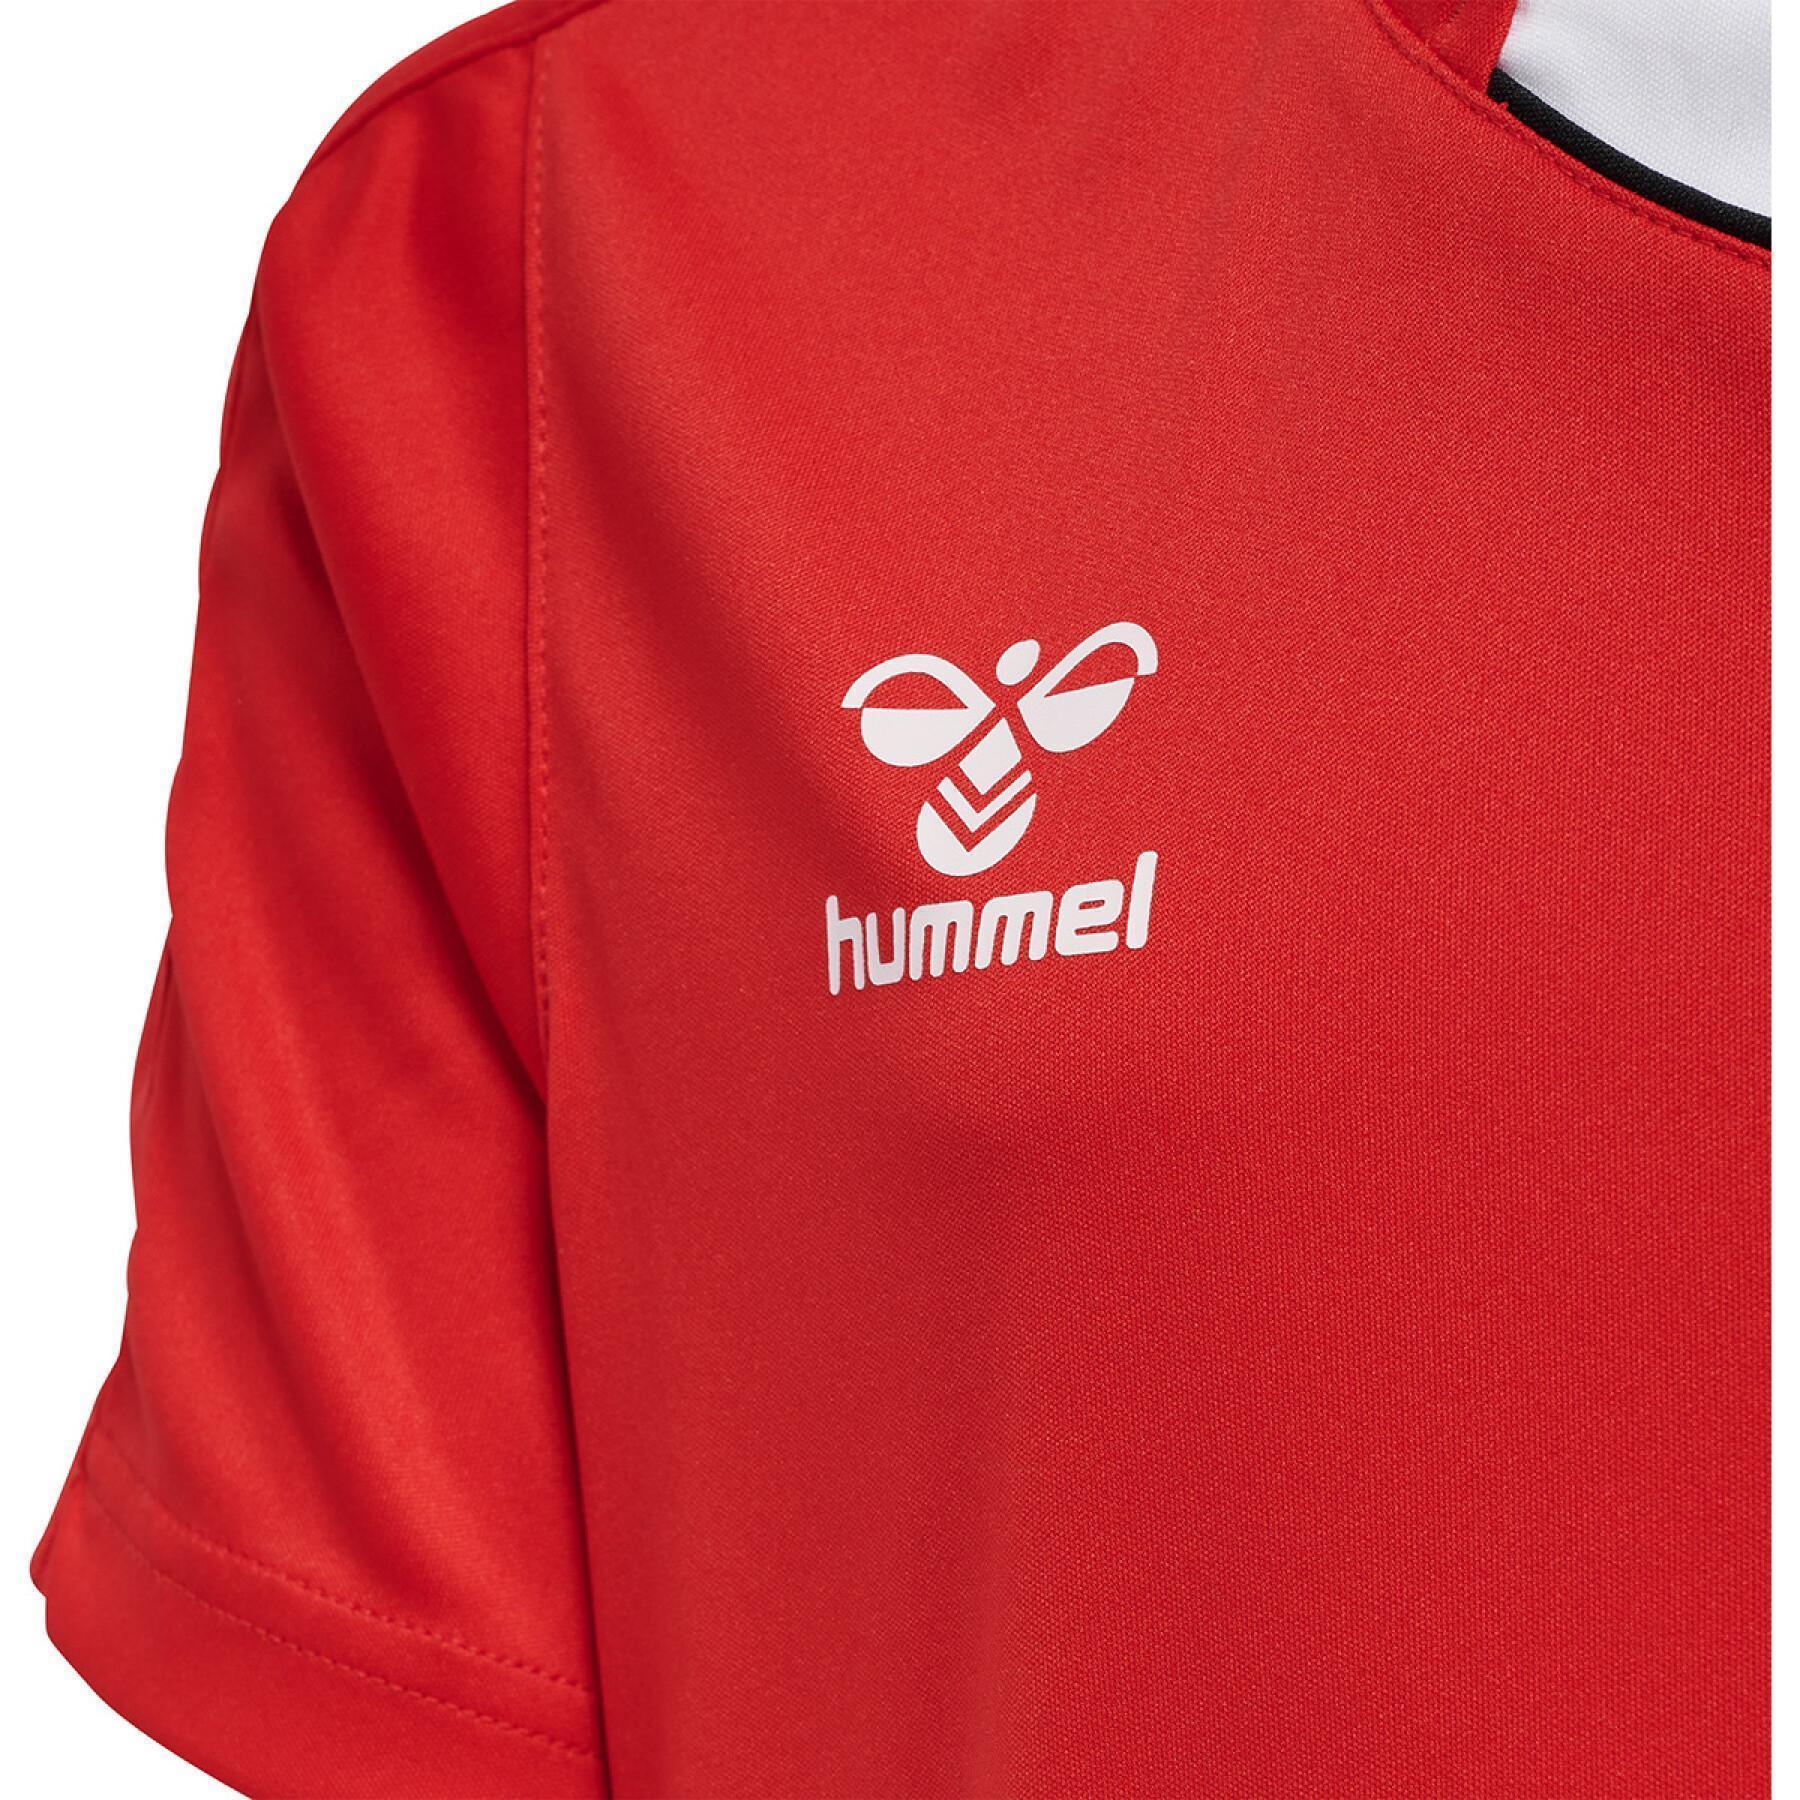 Kid's jersey Hummel hmlCORE XK - Hummel - Brands - Basketball wear